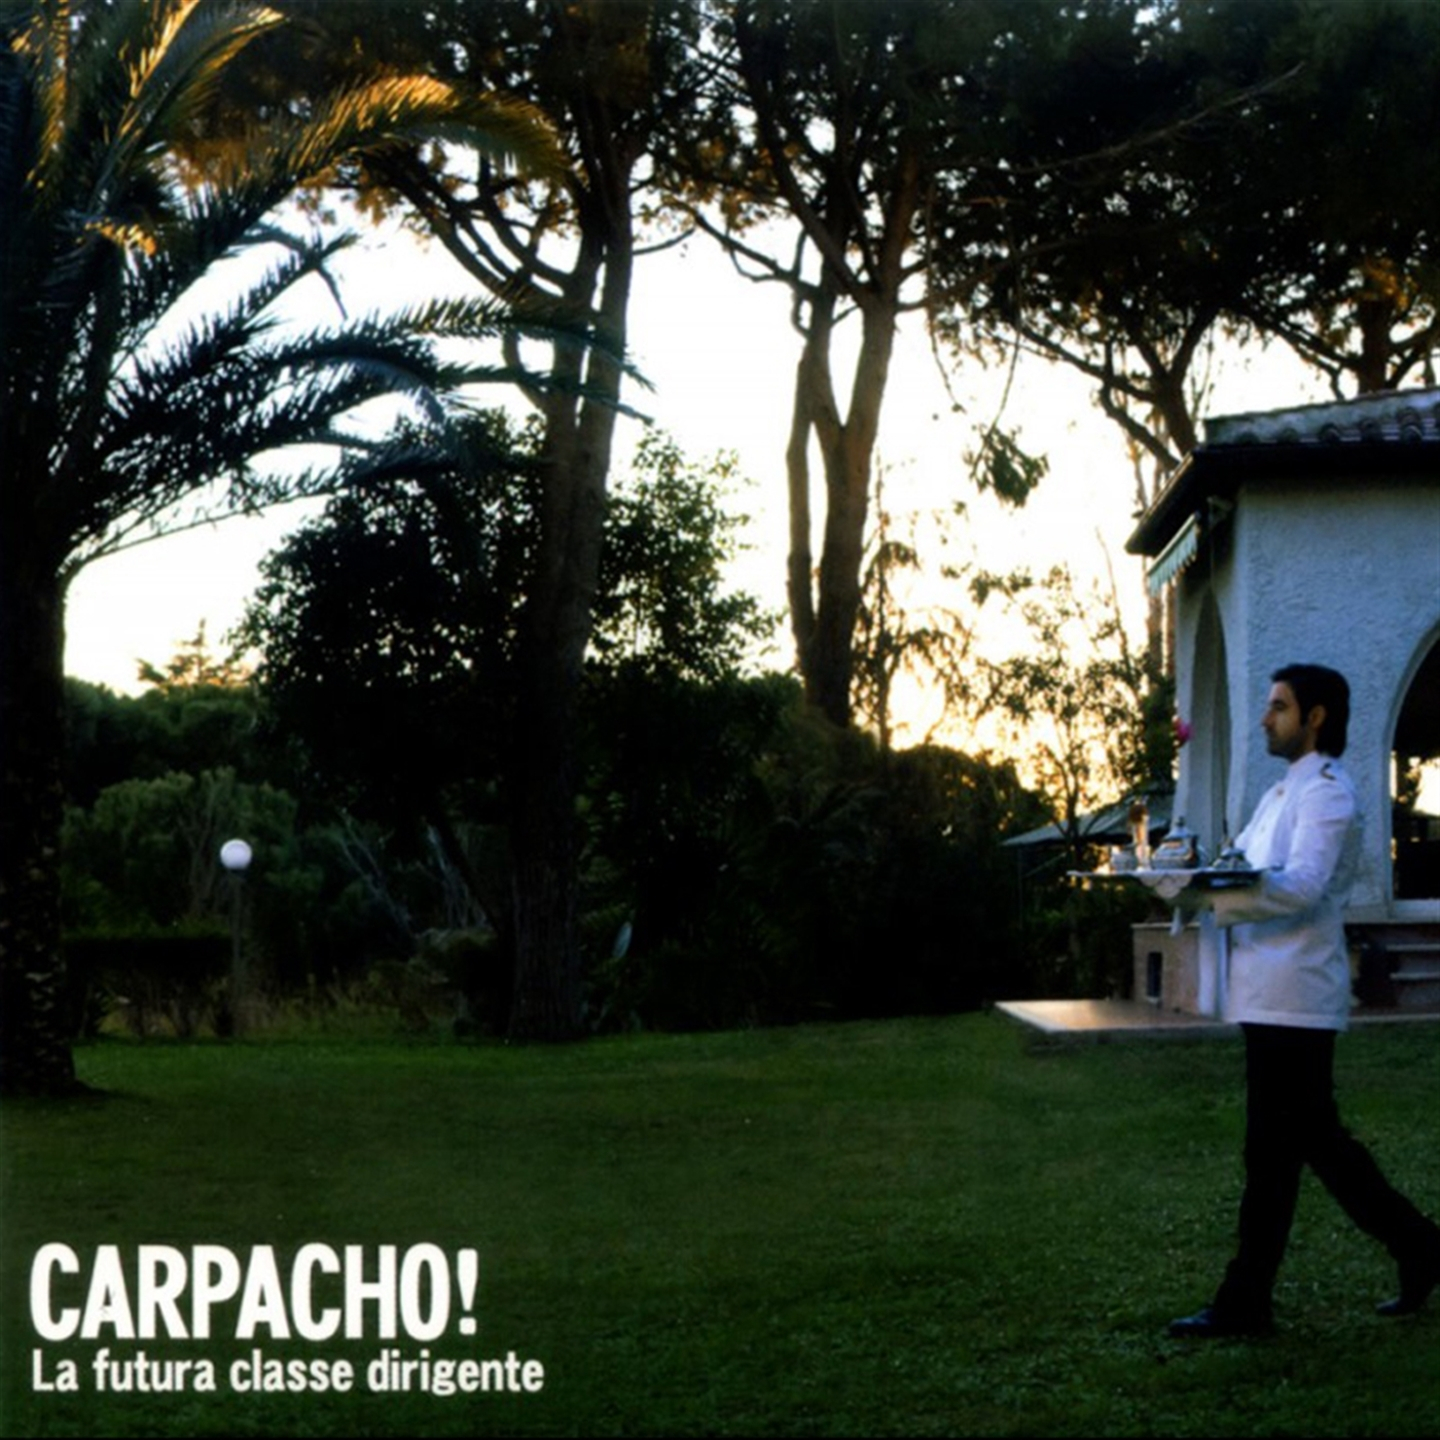 Carpacho! - La Futura Classe Dirigente - Picture 1 of 1